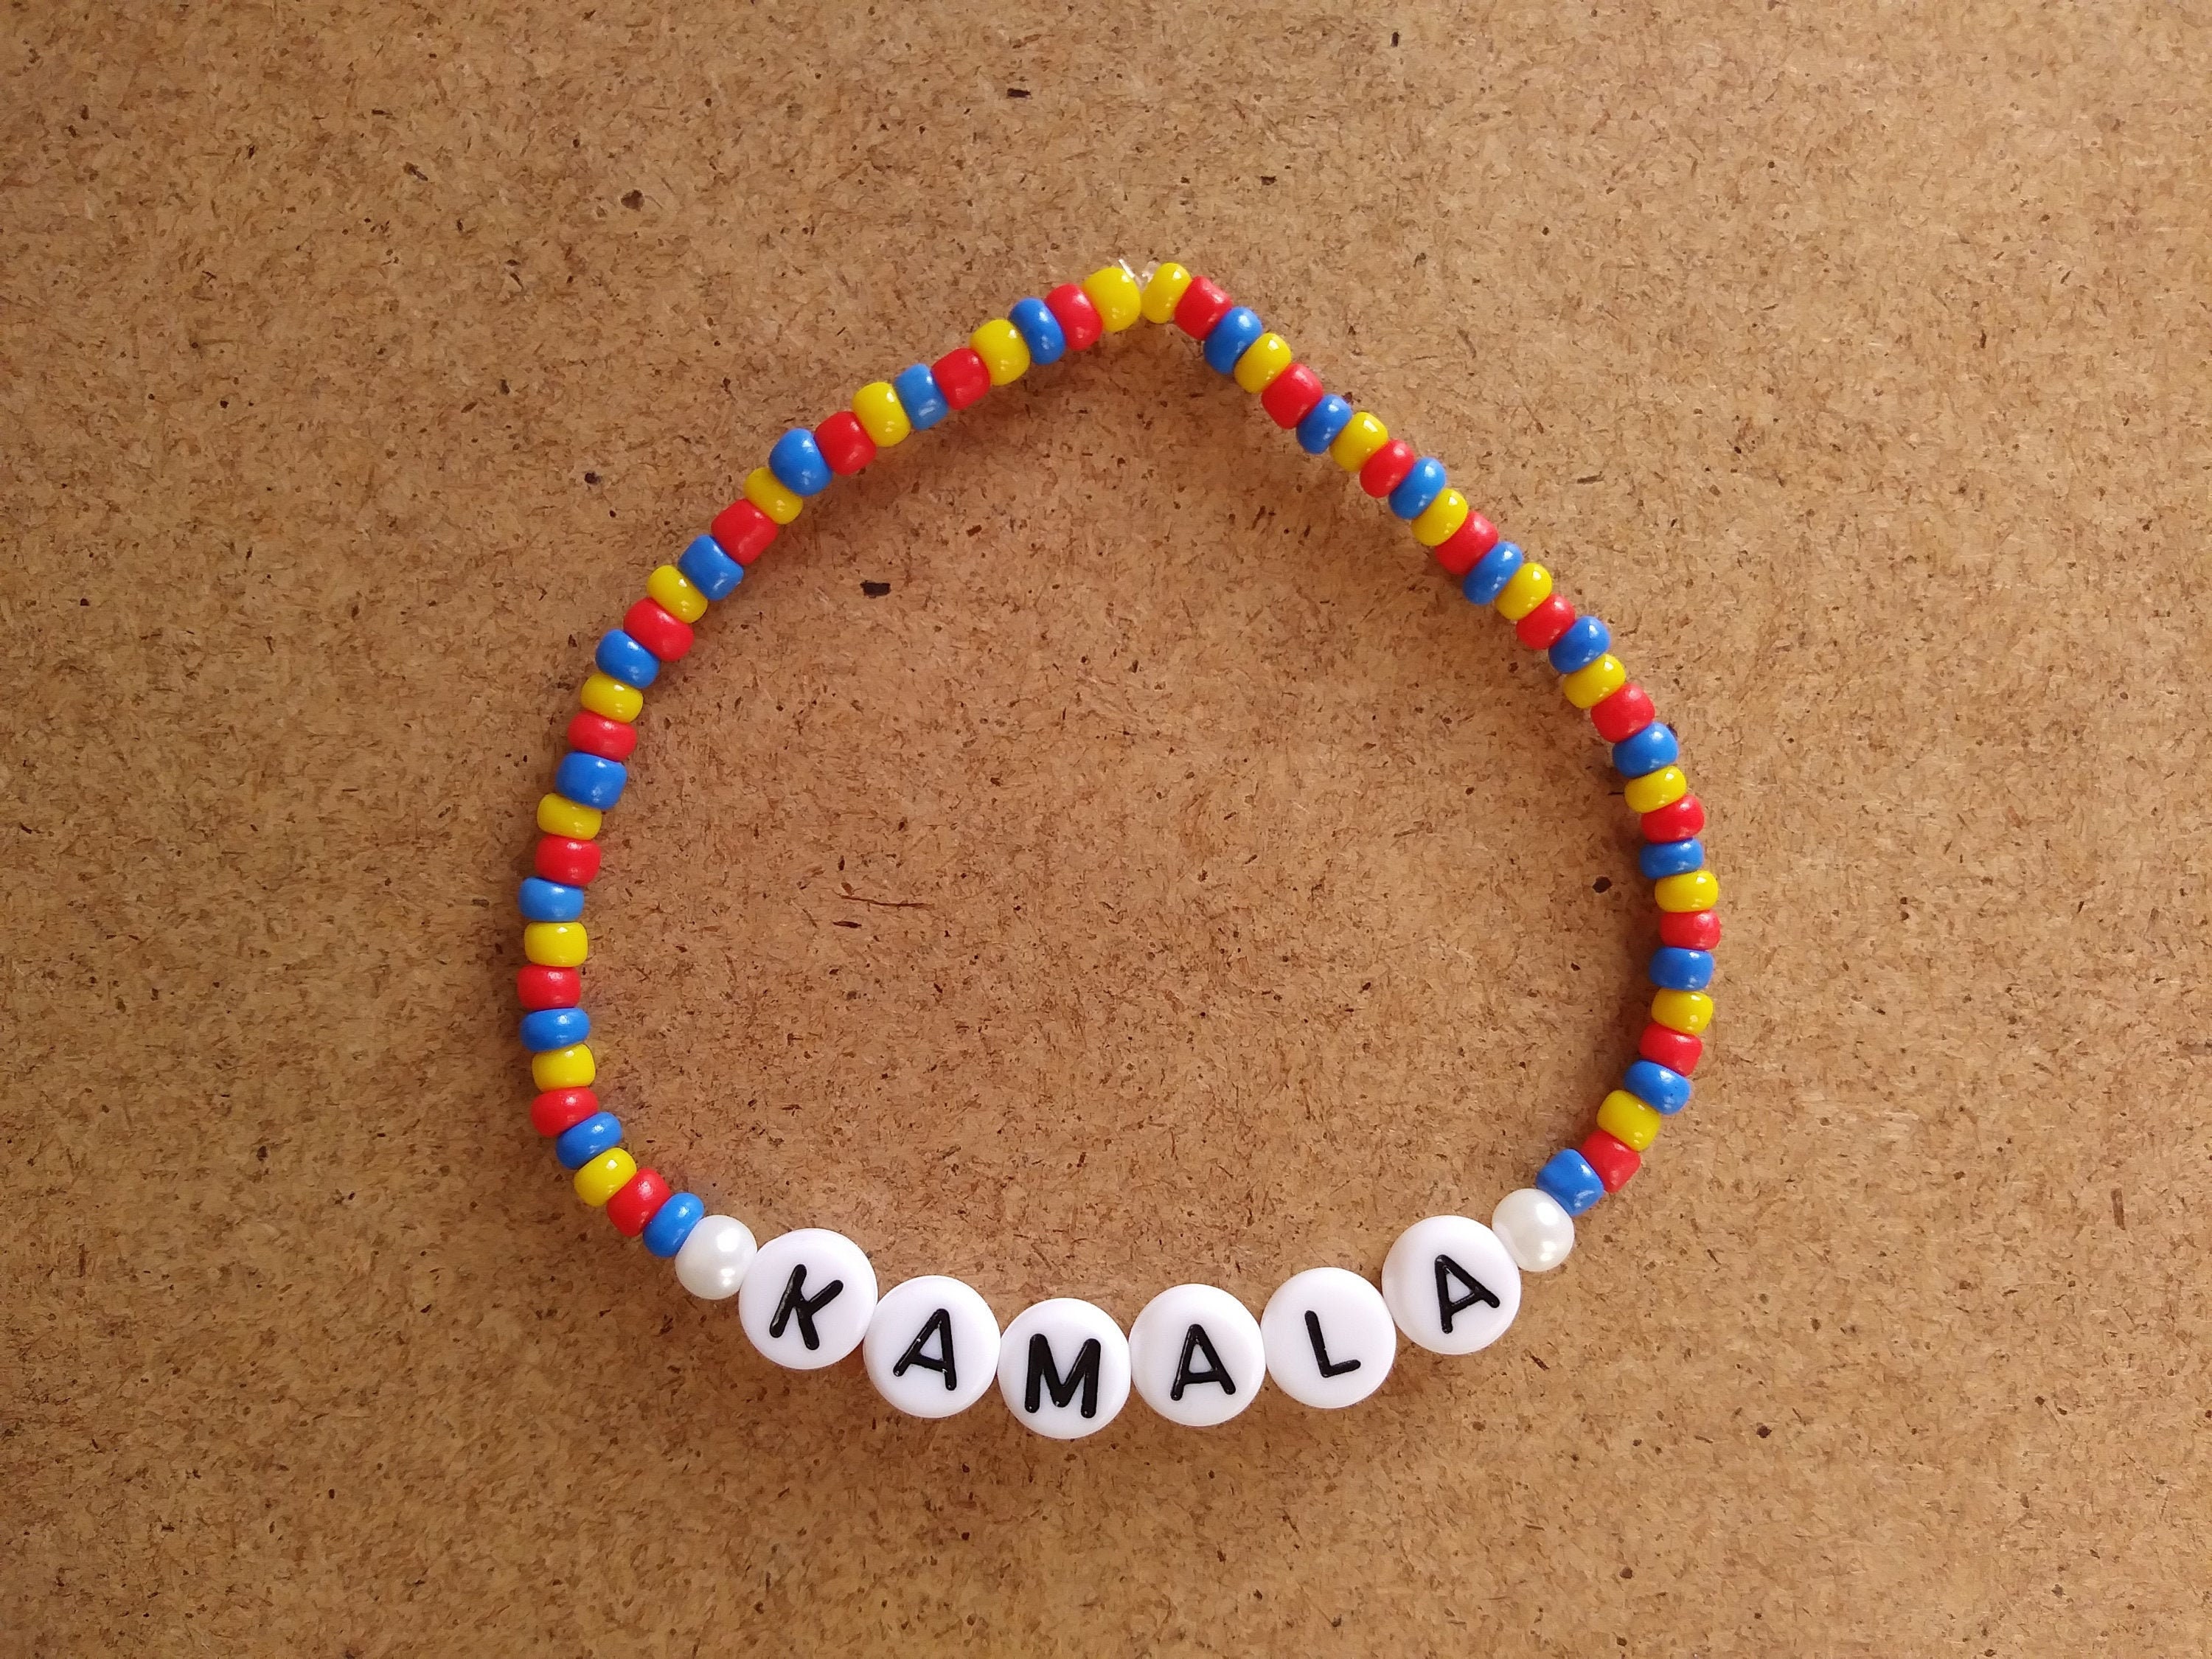 Kamala bracelet